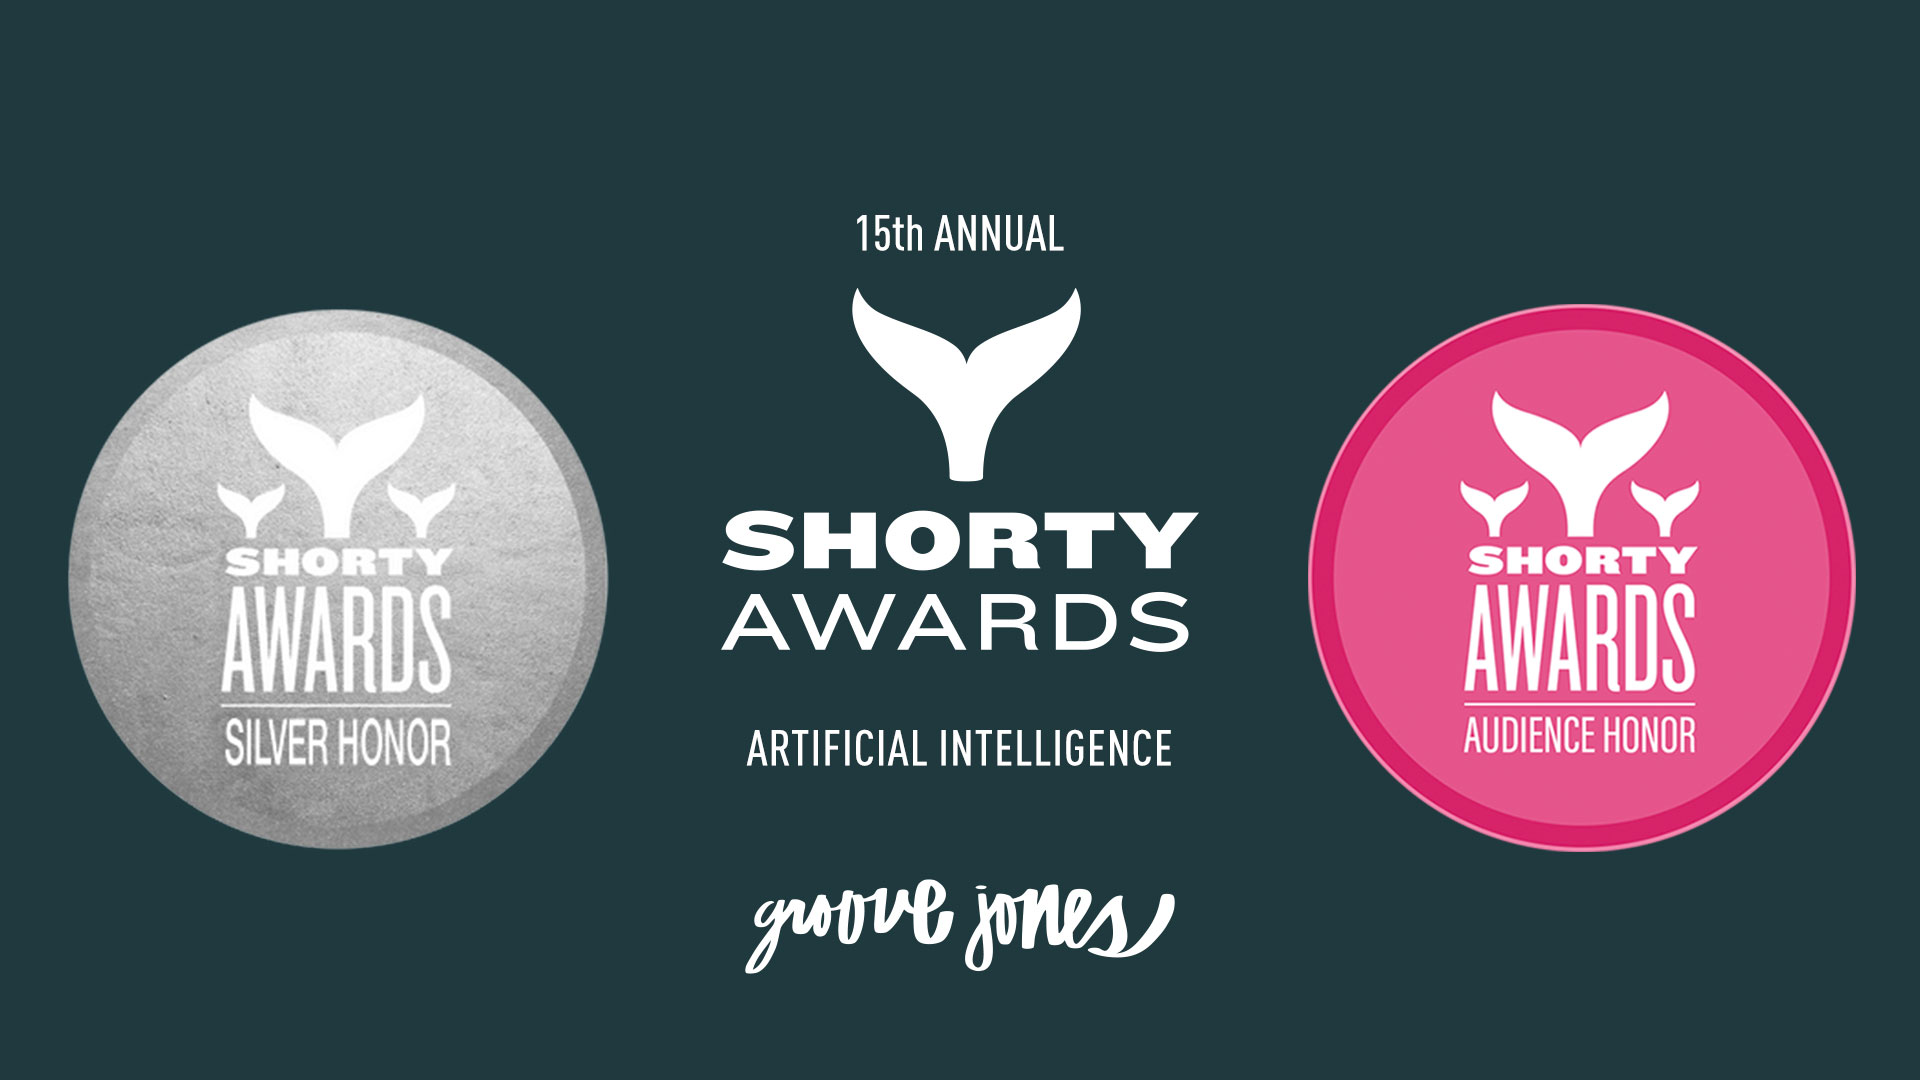 Origins - The Shorty Awards